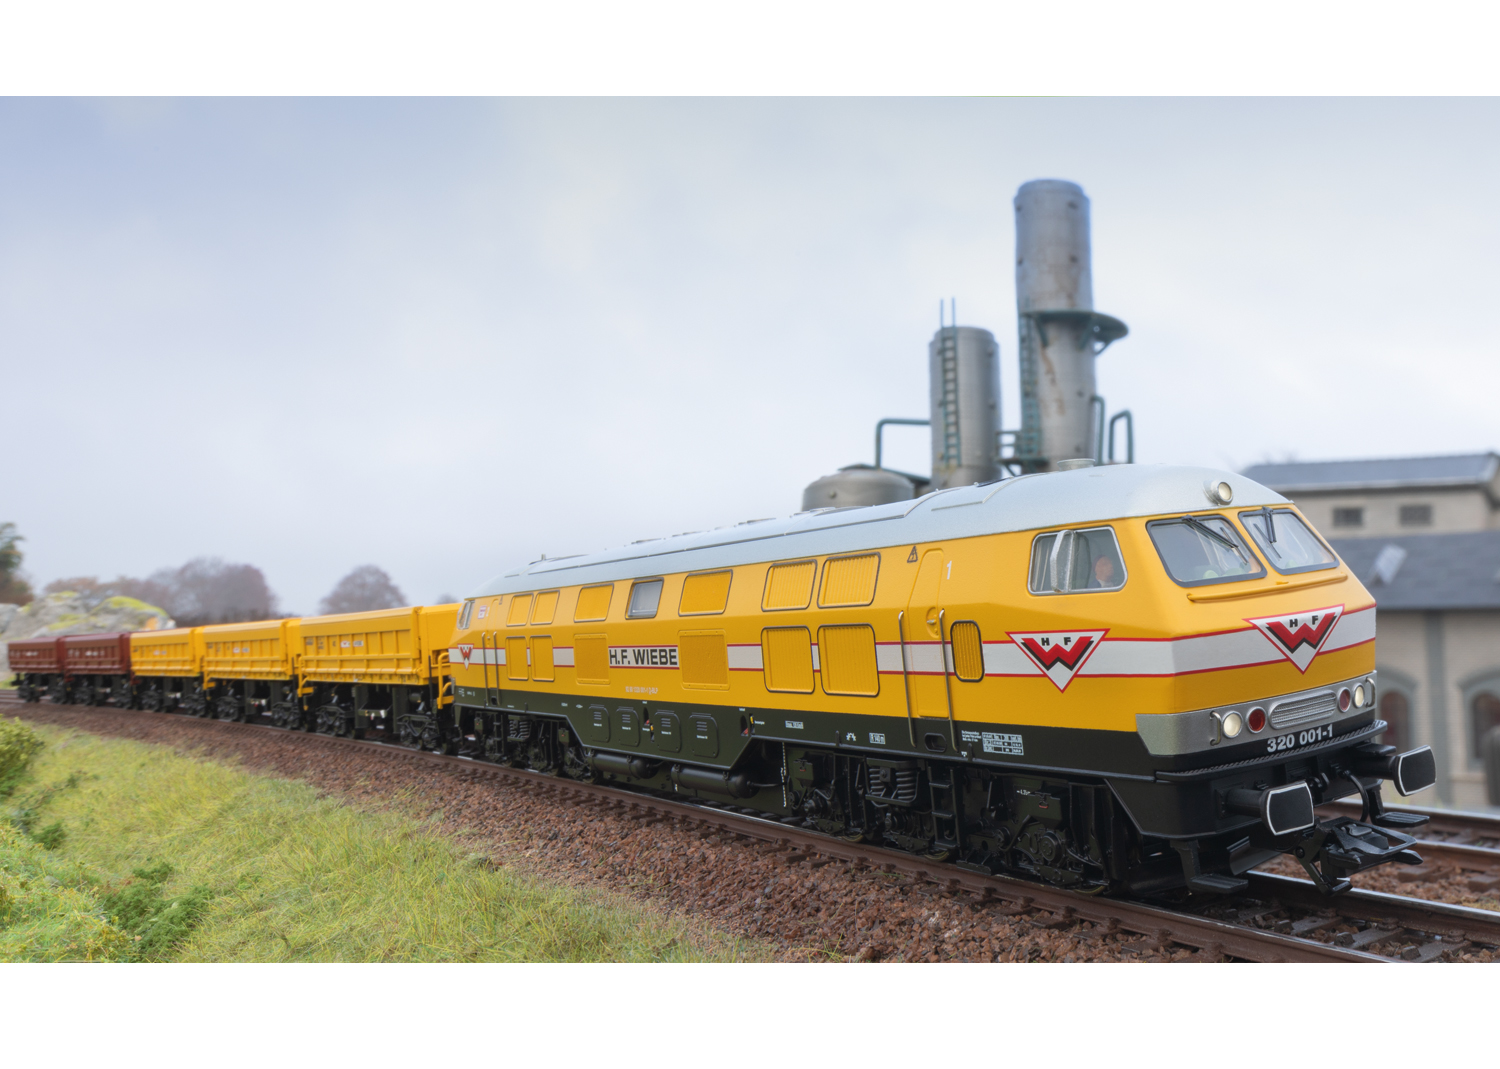 Märklin 39321 Diesellokomotive 320 001-1 Diesellokomotive Baureihe V 320